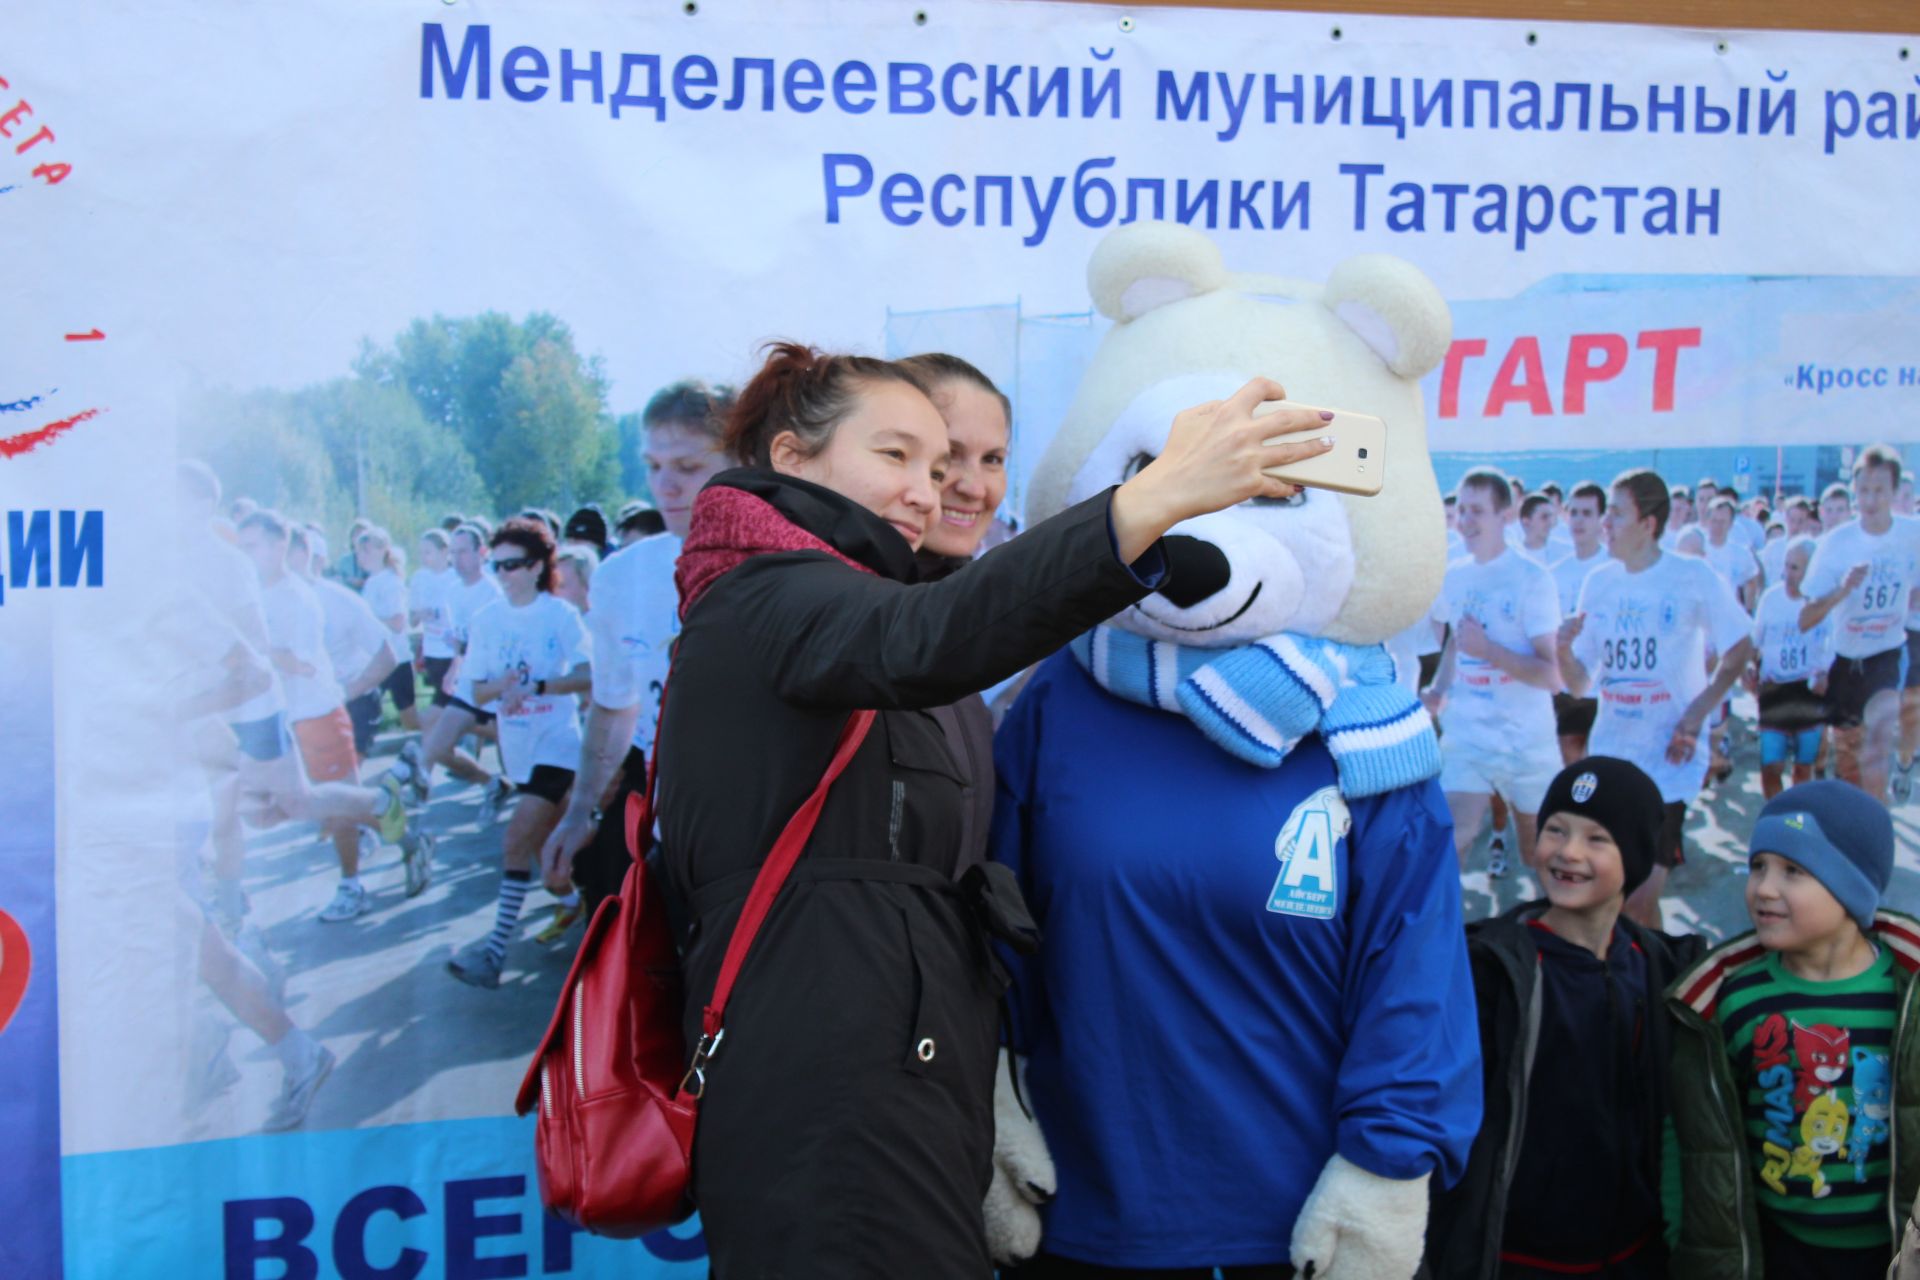 Талисман хоккейной команды «Айсберг» стал популярной фигурой на «Кроссе Татарстана» в Менделеевске